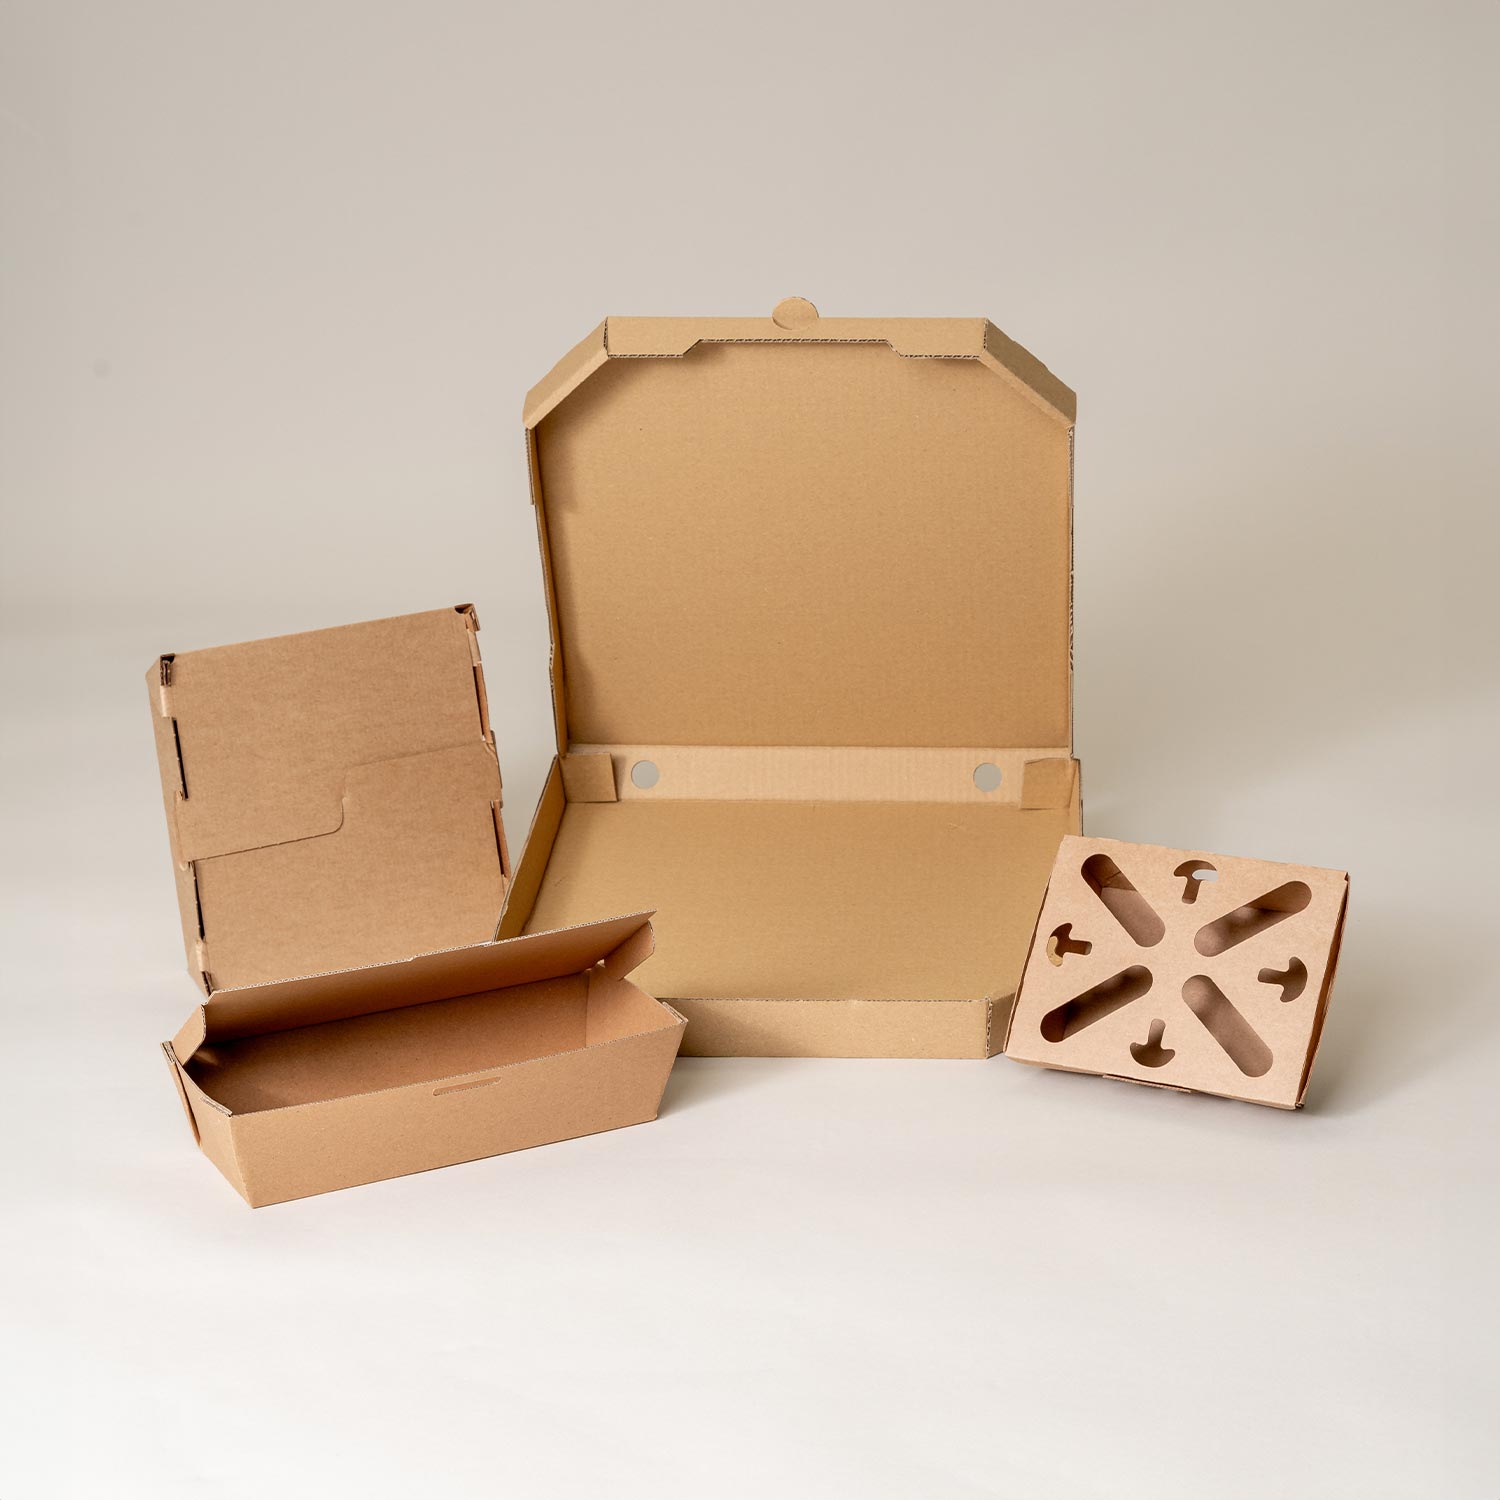 Les types d'emballages papier écologiques - Comptoir de l'emballage